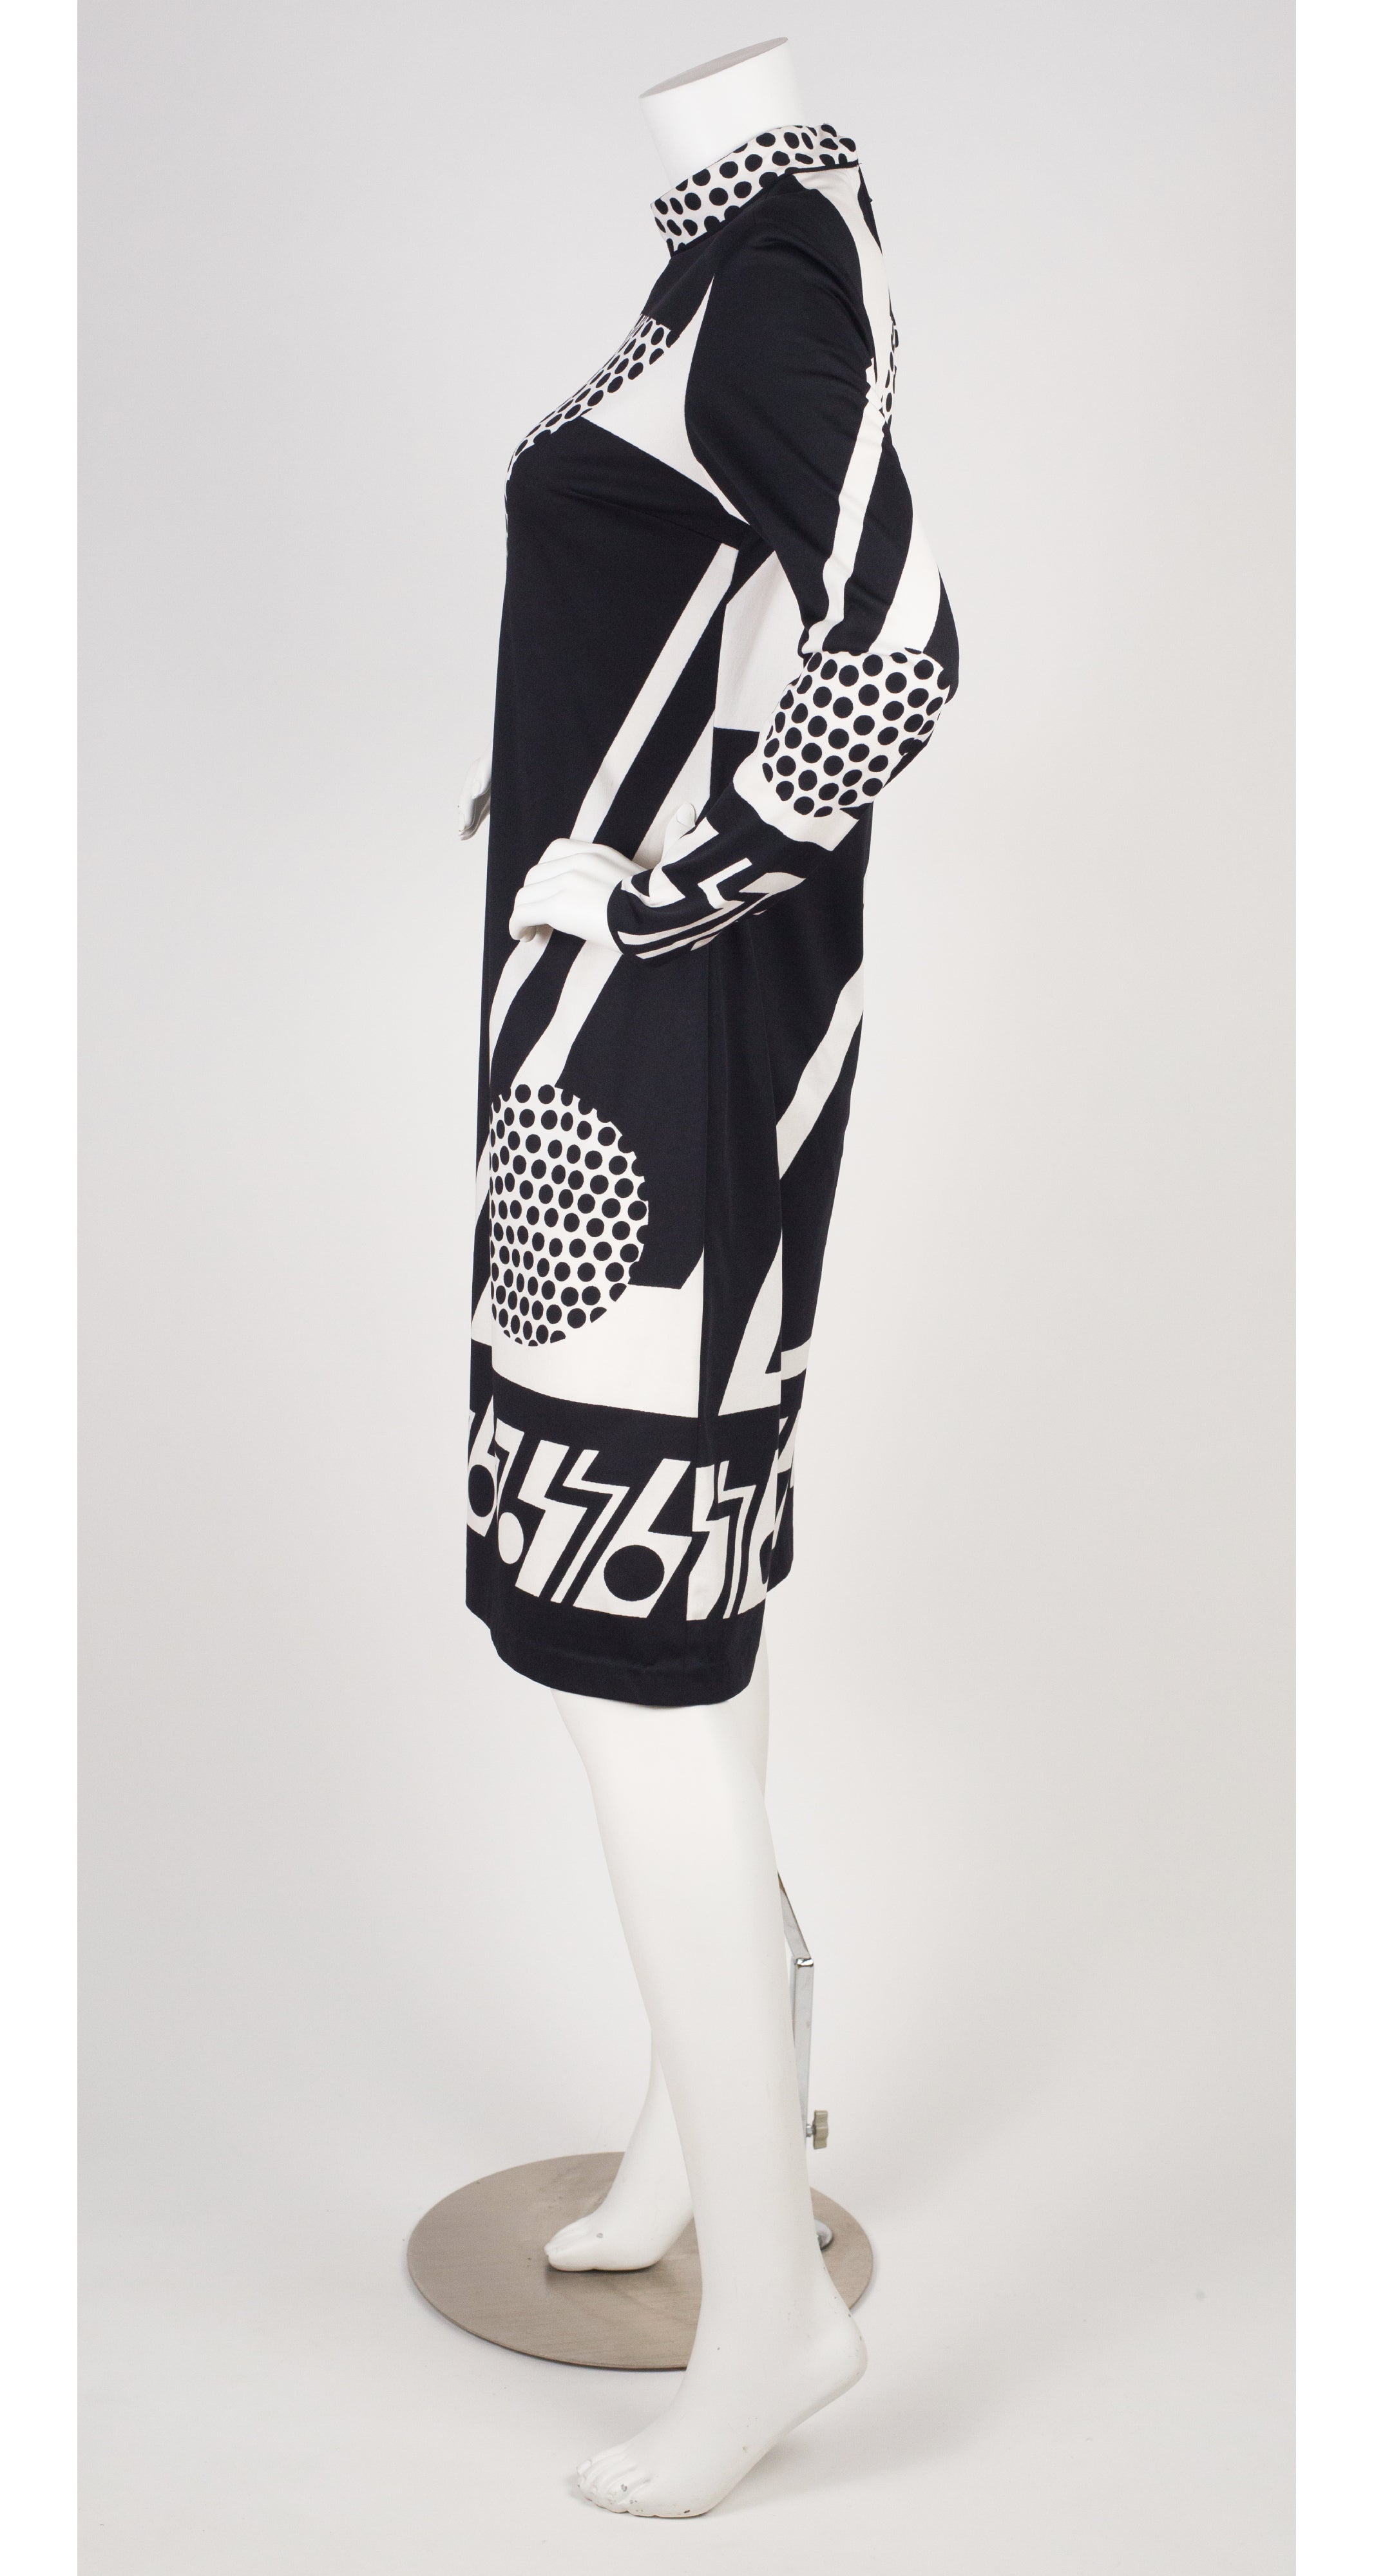 1960s Black & White Op Art Jersey Dress